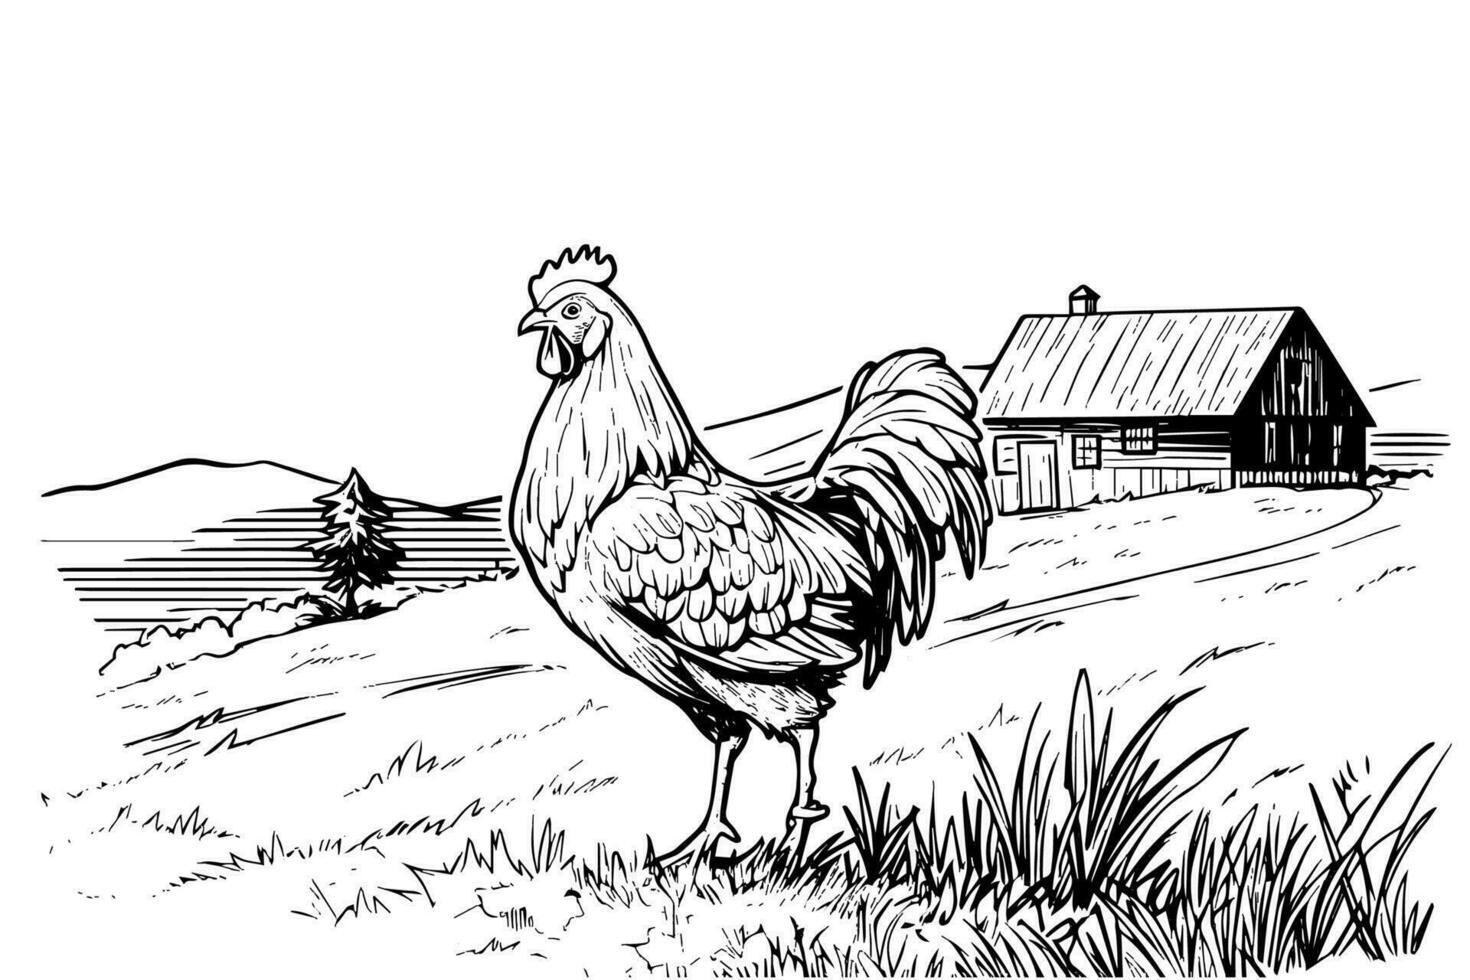 kycklingar i bruka skiss. lantlig landskap i årgång gravyr stil vektor illustration.